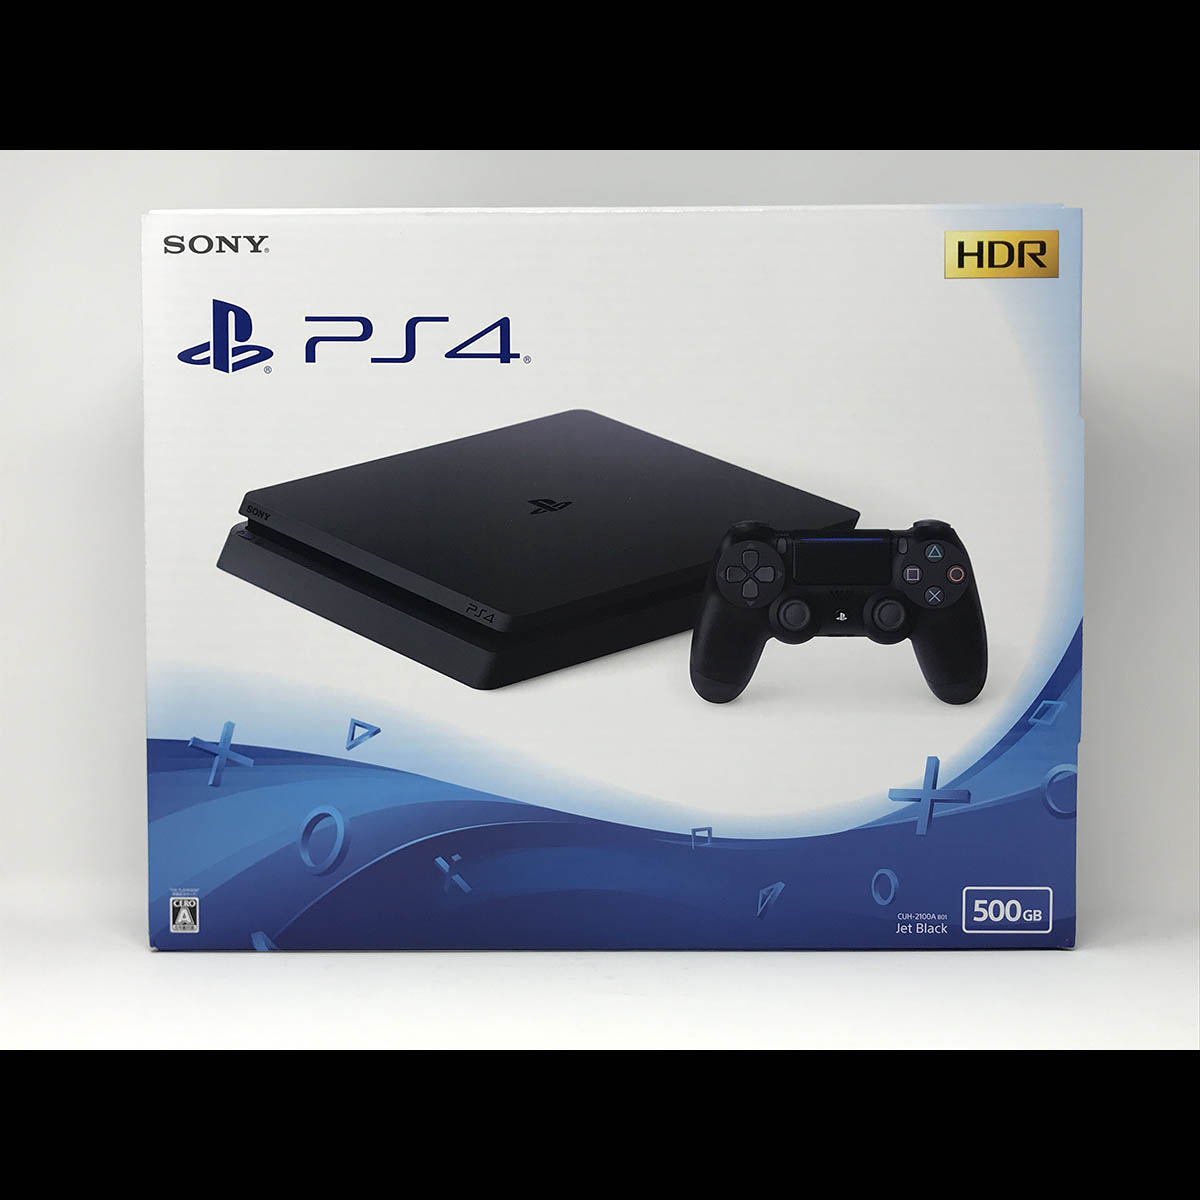 PlayStation4 PS4 本体 CUH-2100AB01